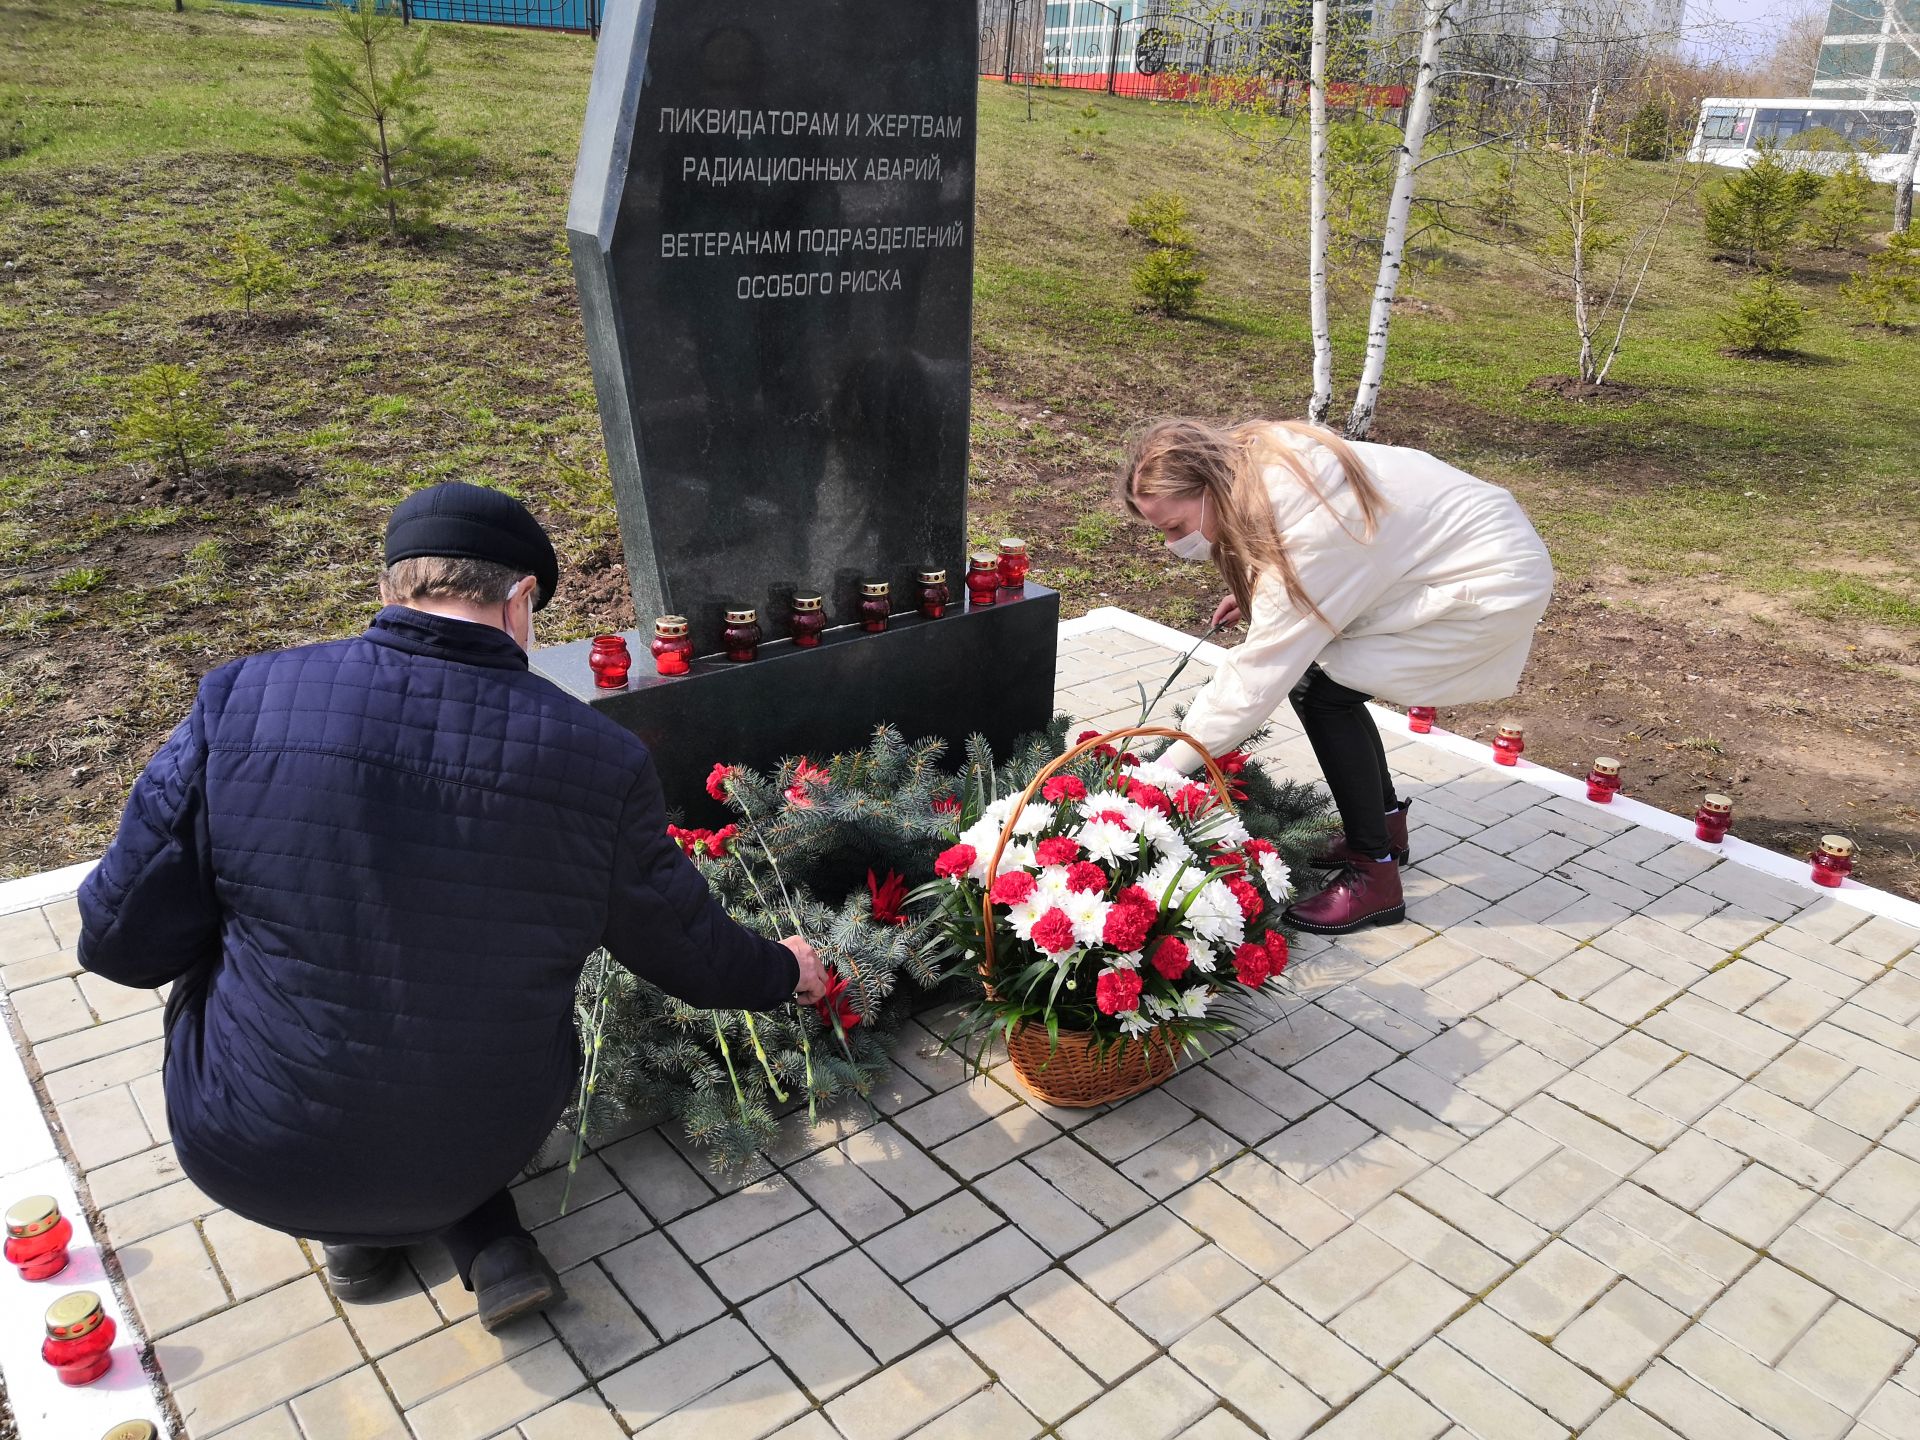 Камские Поляны: Международный День памяти жертв радиационных аварий и катастроф